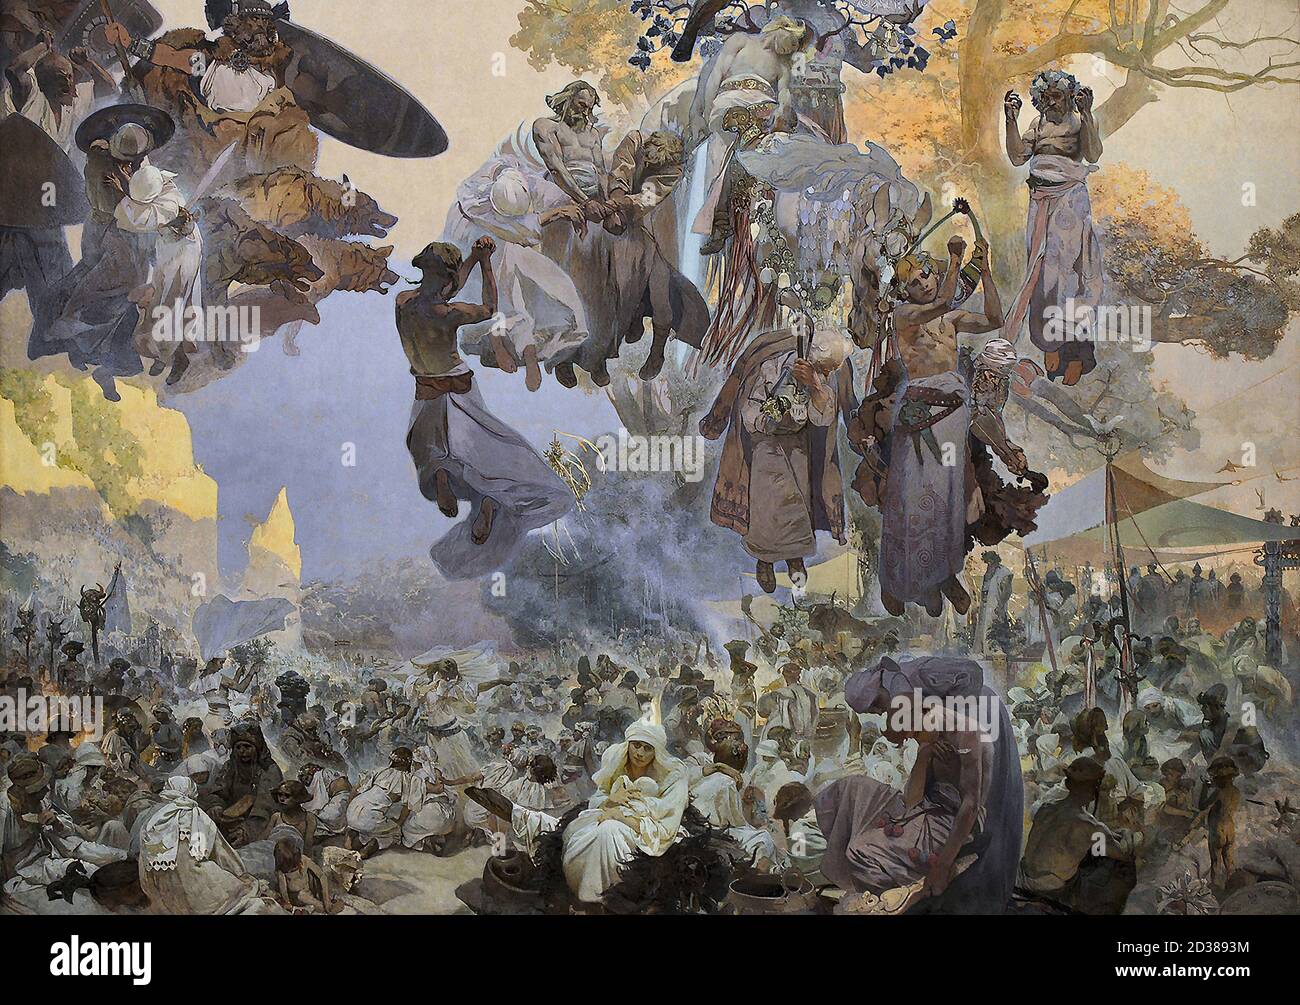 mucha, alphonse maria - Het Slavische Epos 02 - De viering van Svantovit - als de goden oorlog voeren, ligt de redding in de kunst - 26296282626 e167963e92 o Stock Photo